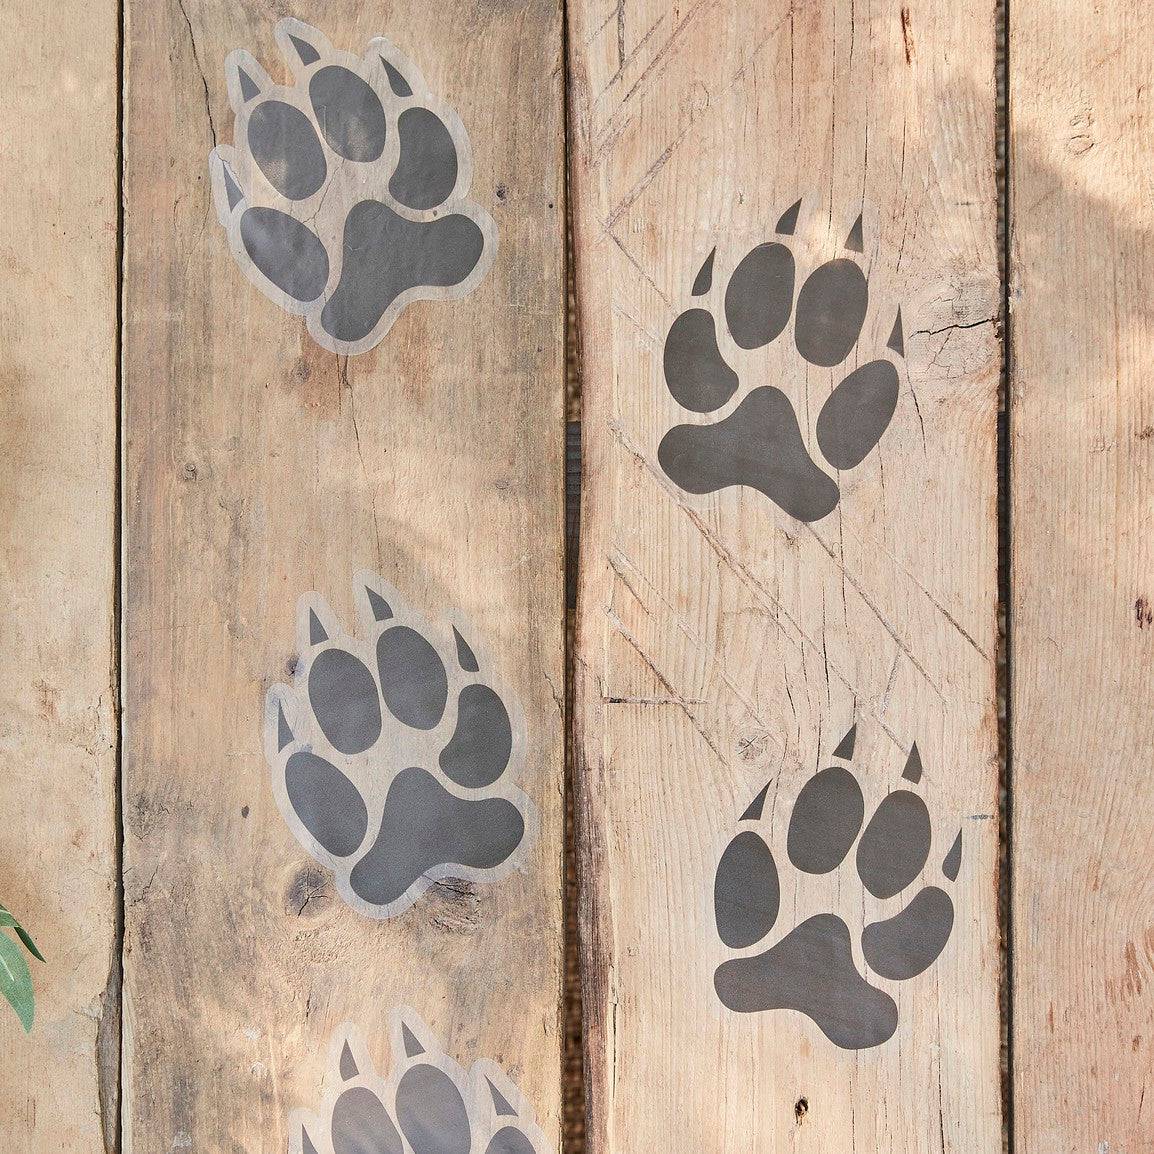 Tierpfoten Footprint Aufkleber Ginger Ray - Der Backmichgluecklich Online Shop